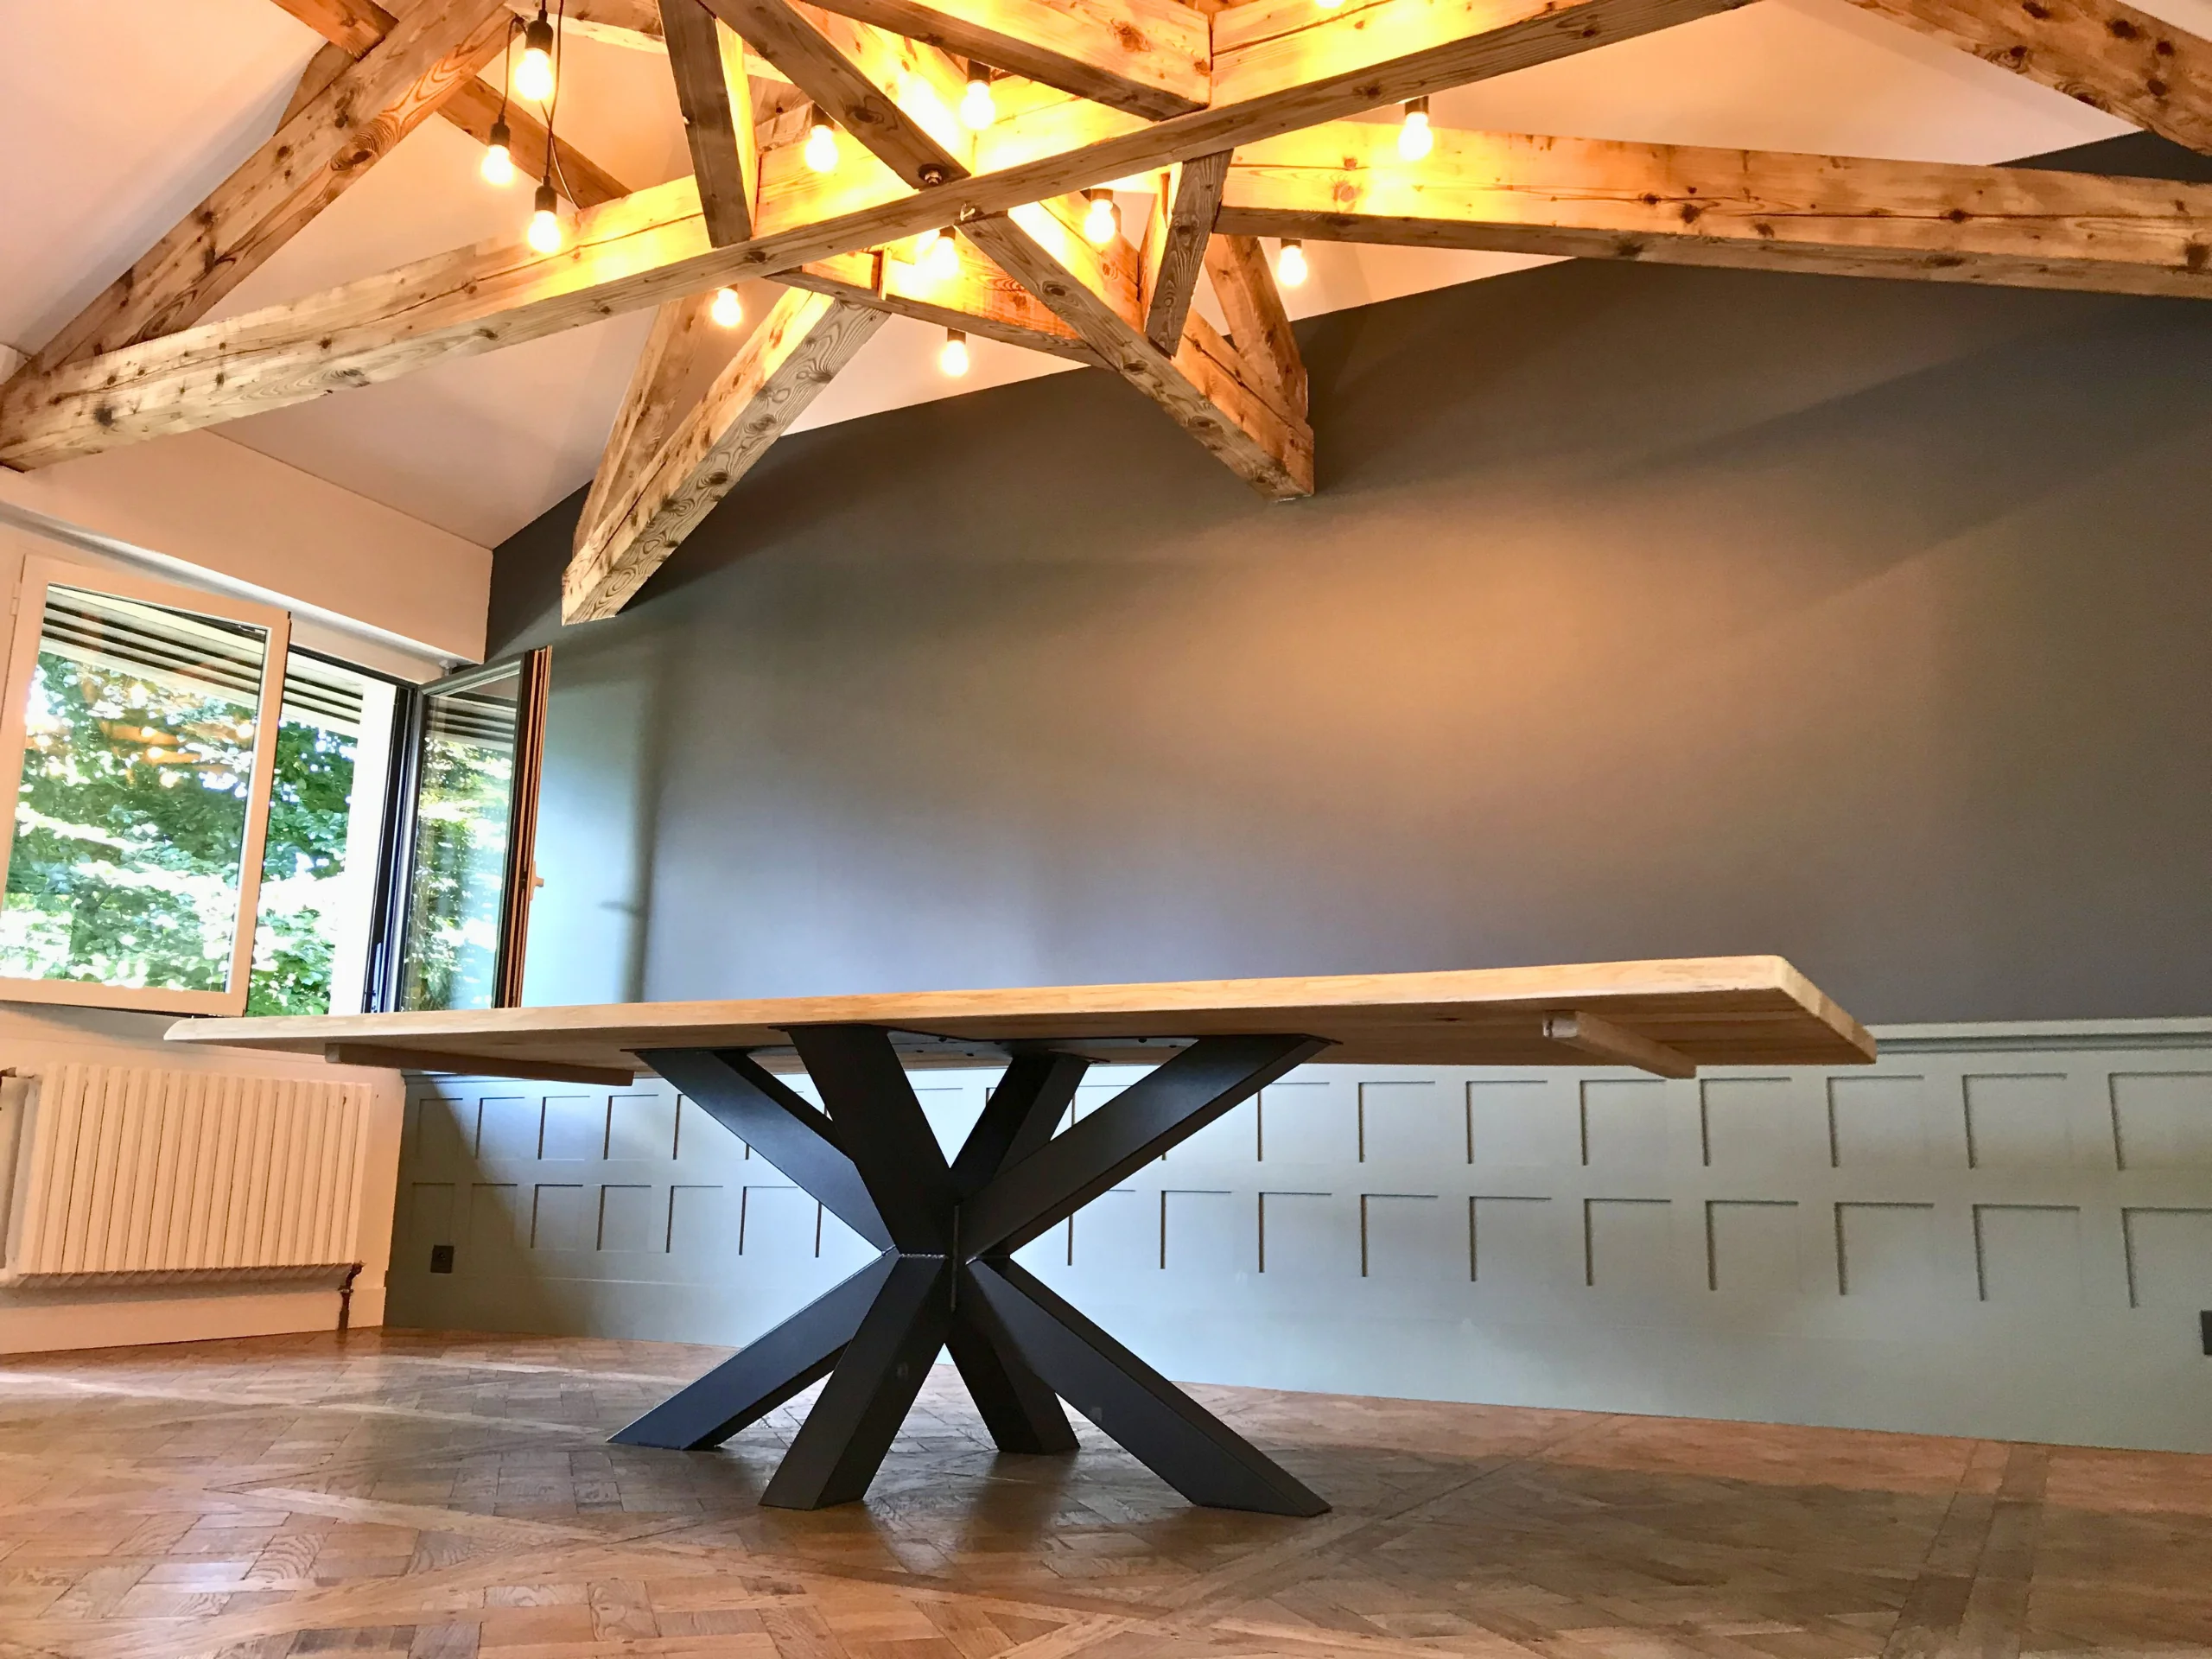 Un grand salon avec un table en bois massif, avec un pied Etoile central acier robuste